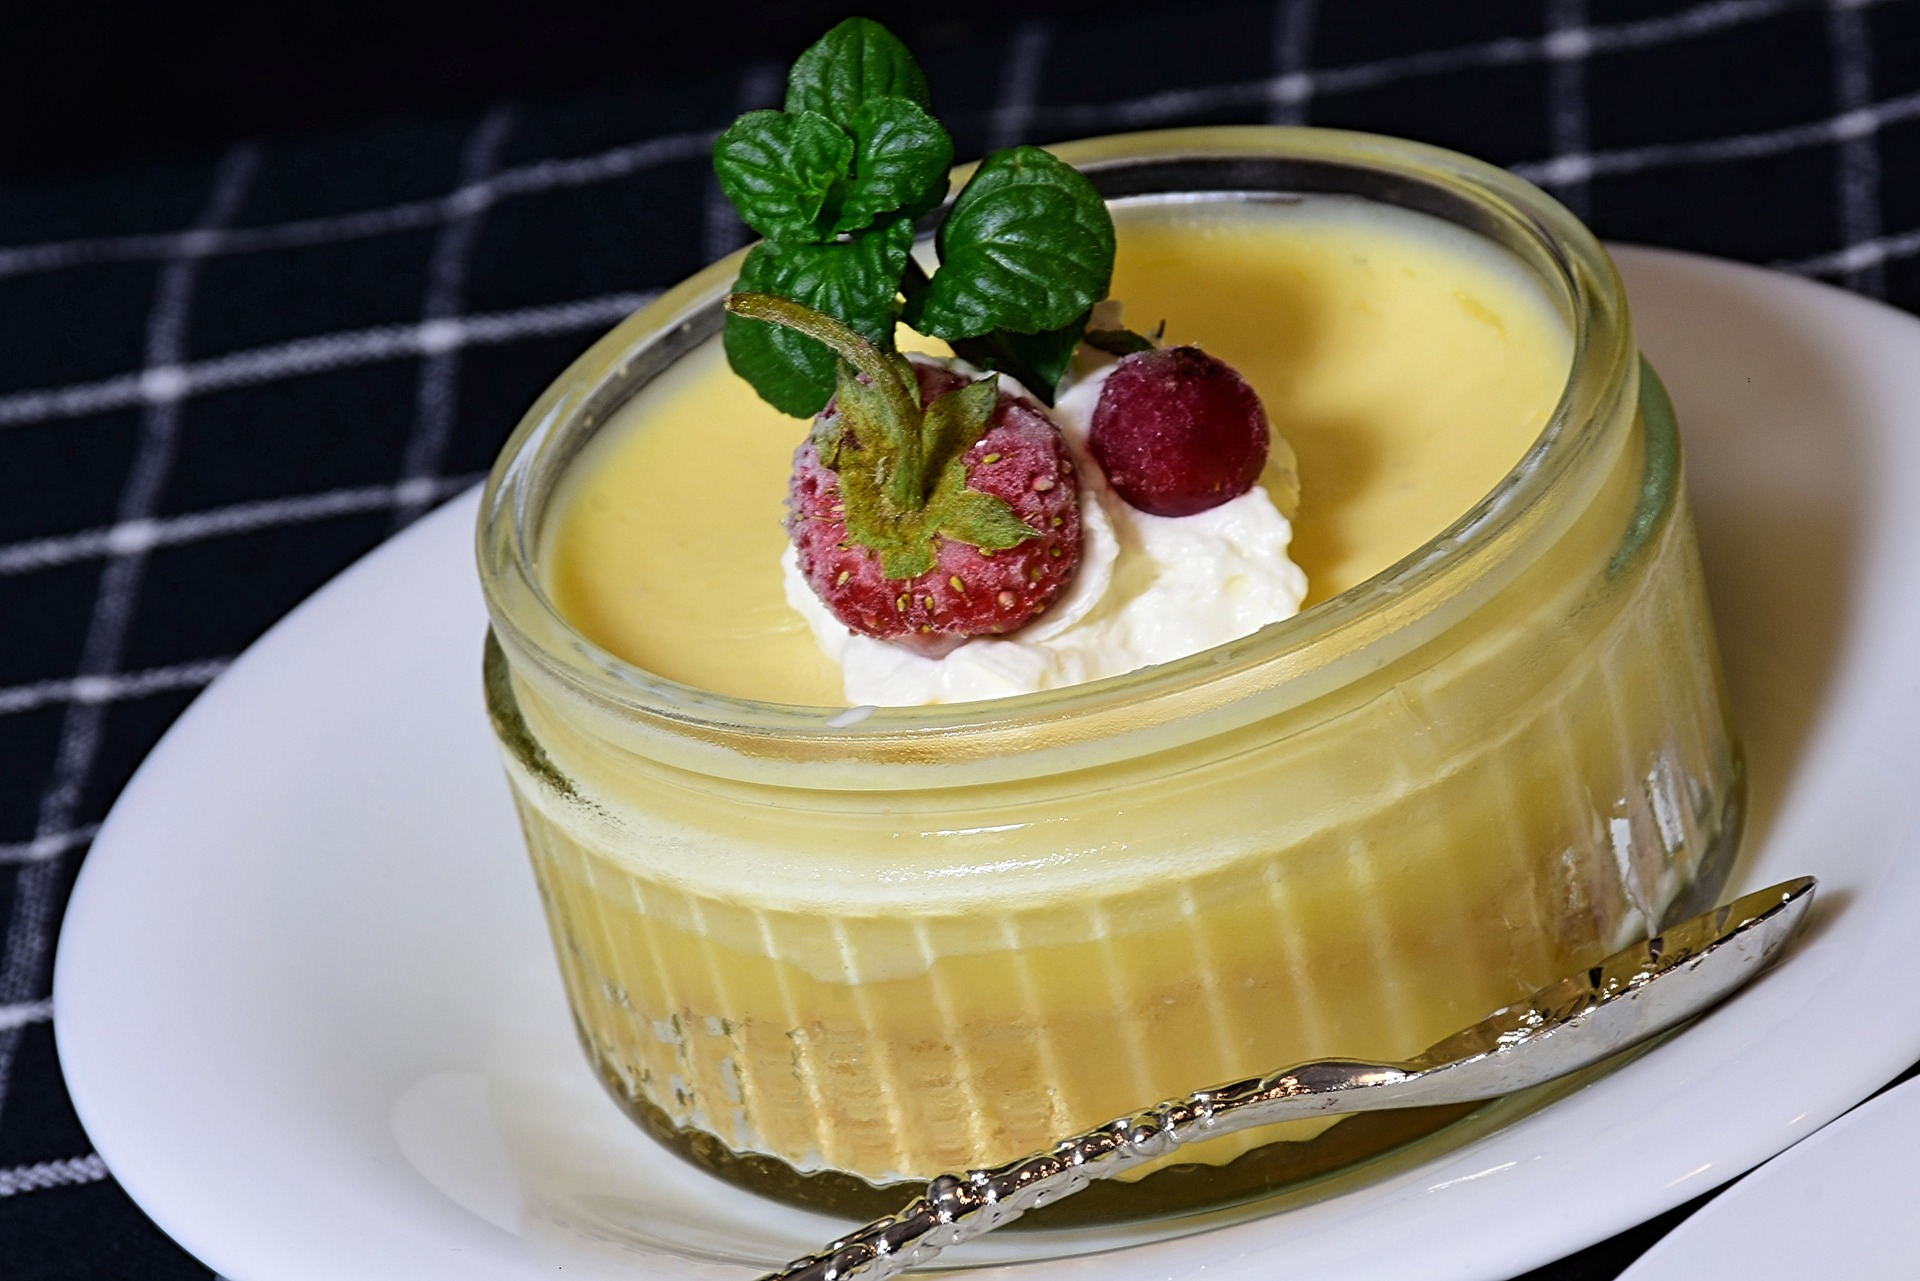 Quarkcreme – Dessert mit Eierlikör und Pfirsichen